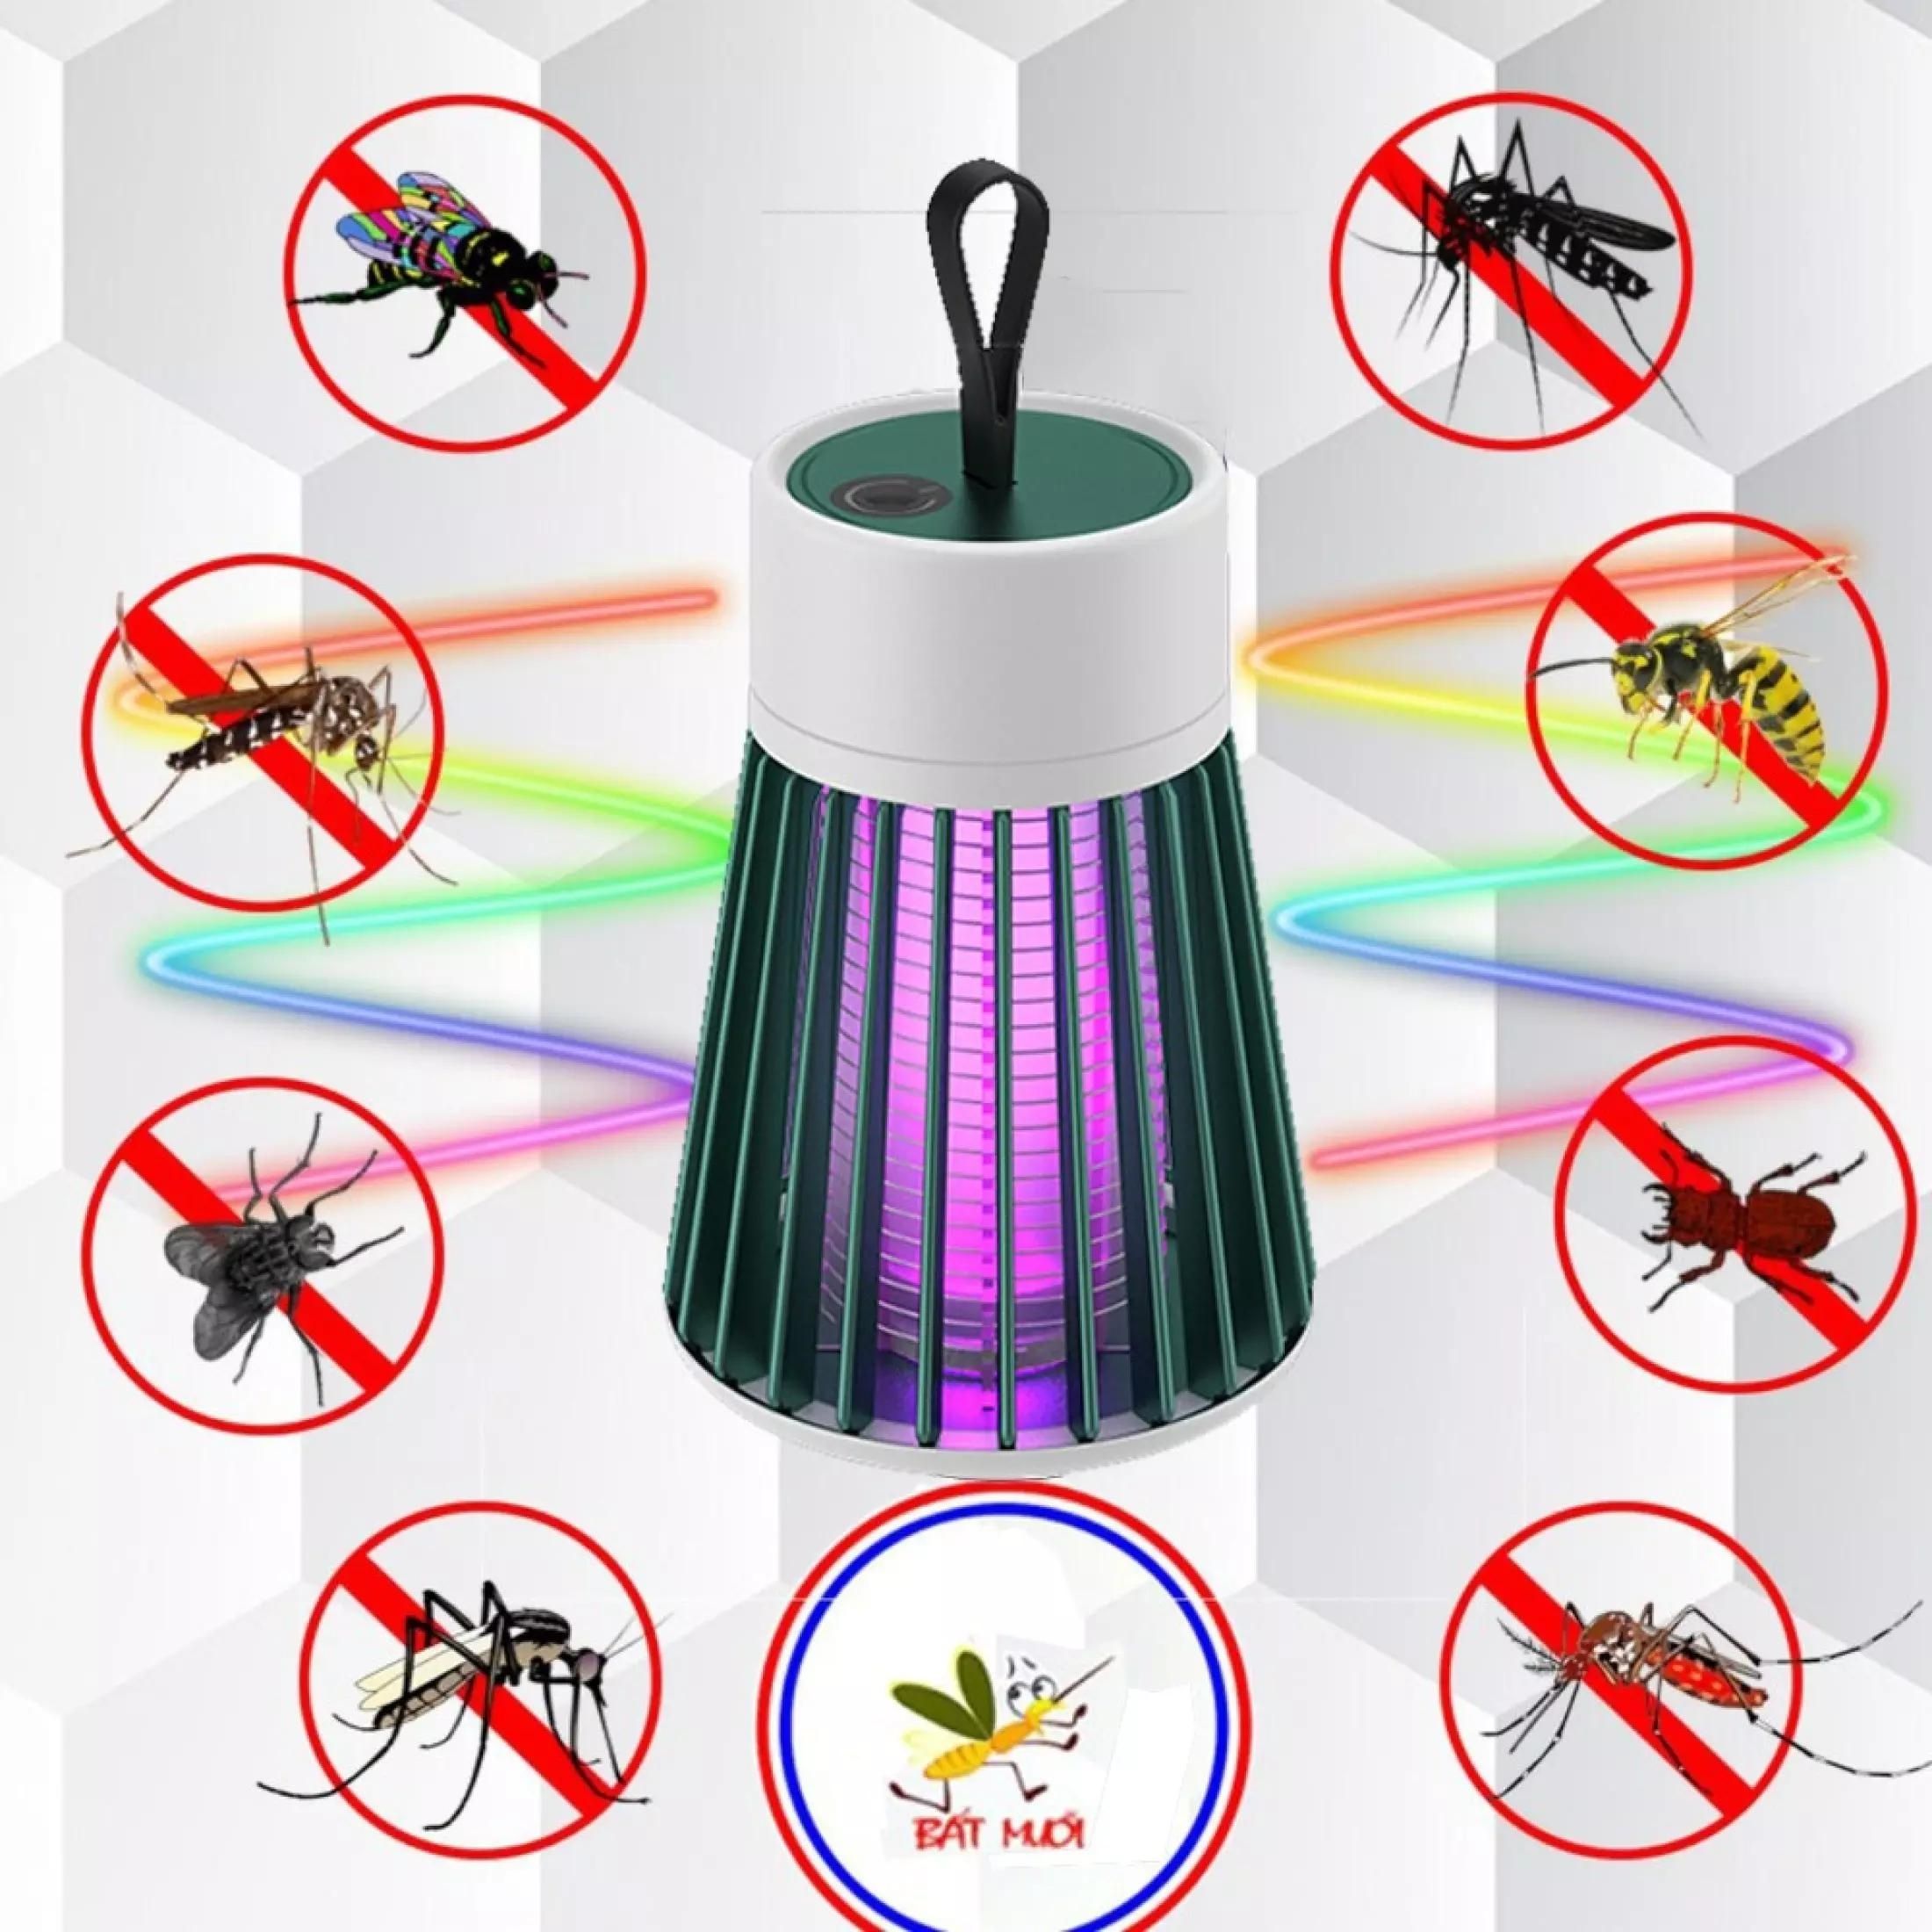 Đèn bắt muỗi thông minh Electric S bản cao cấp - Máy đuổi côn trùng tích hợp đèn ngủ tiện lợi